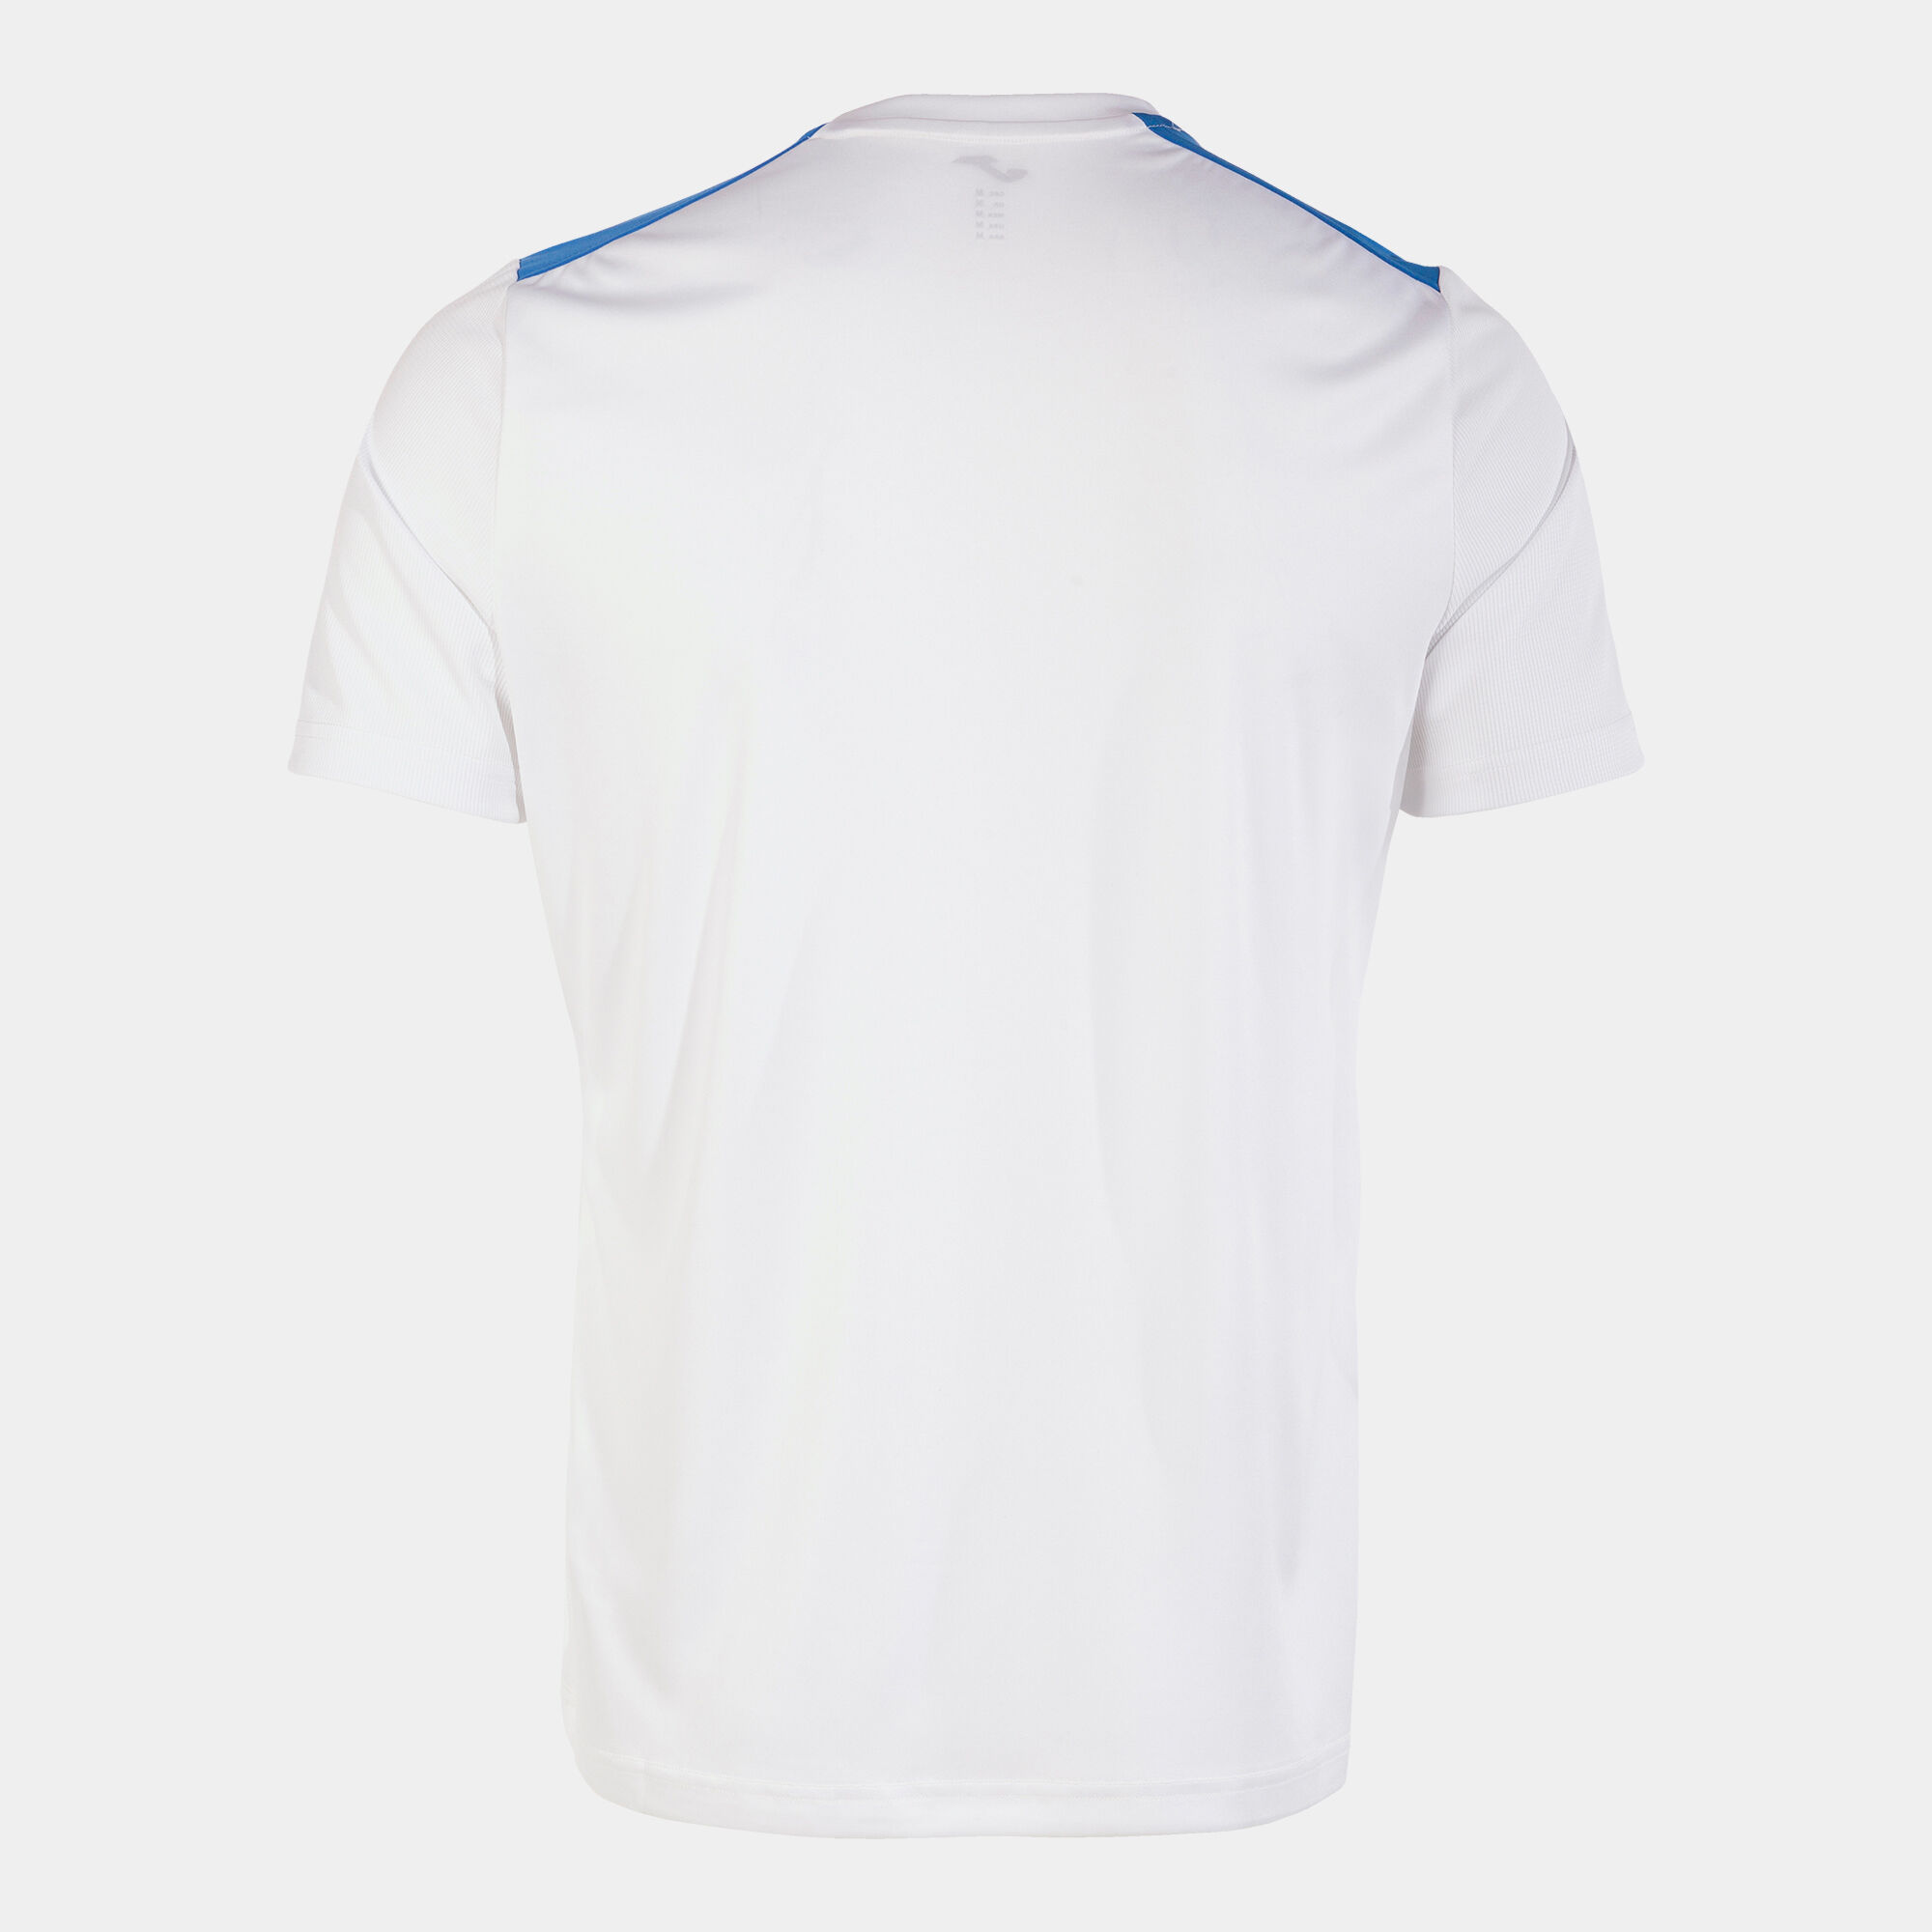 Koszulka z krótkim rękawem mężczyźni Championship VII bialy niebieski royal